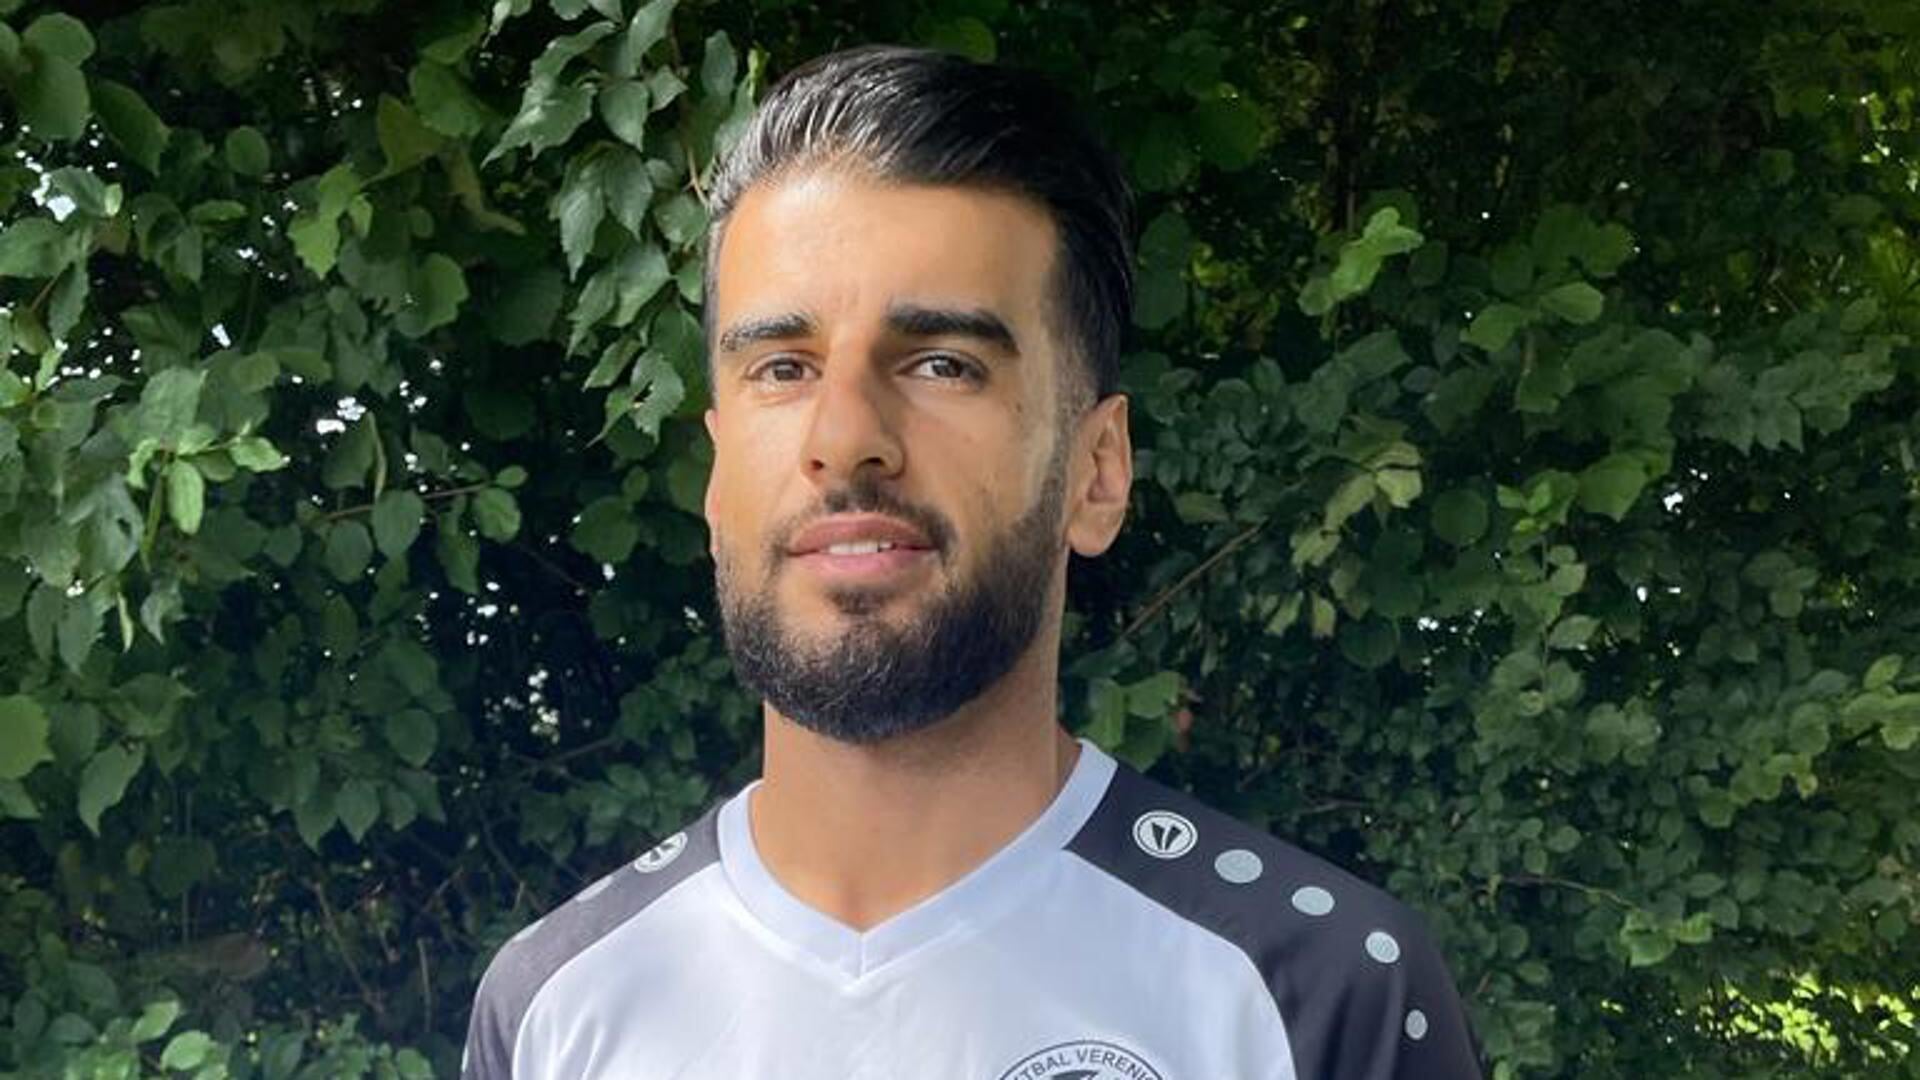 Saïd Hassan speelt niet alleen als voetballer een belangrijke rol bij zijn club